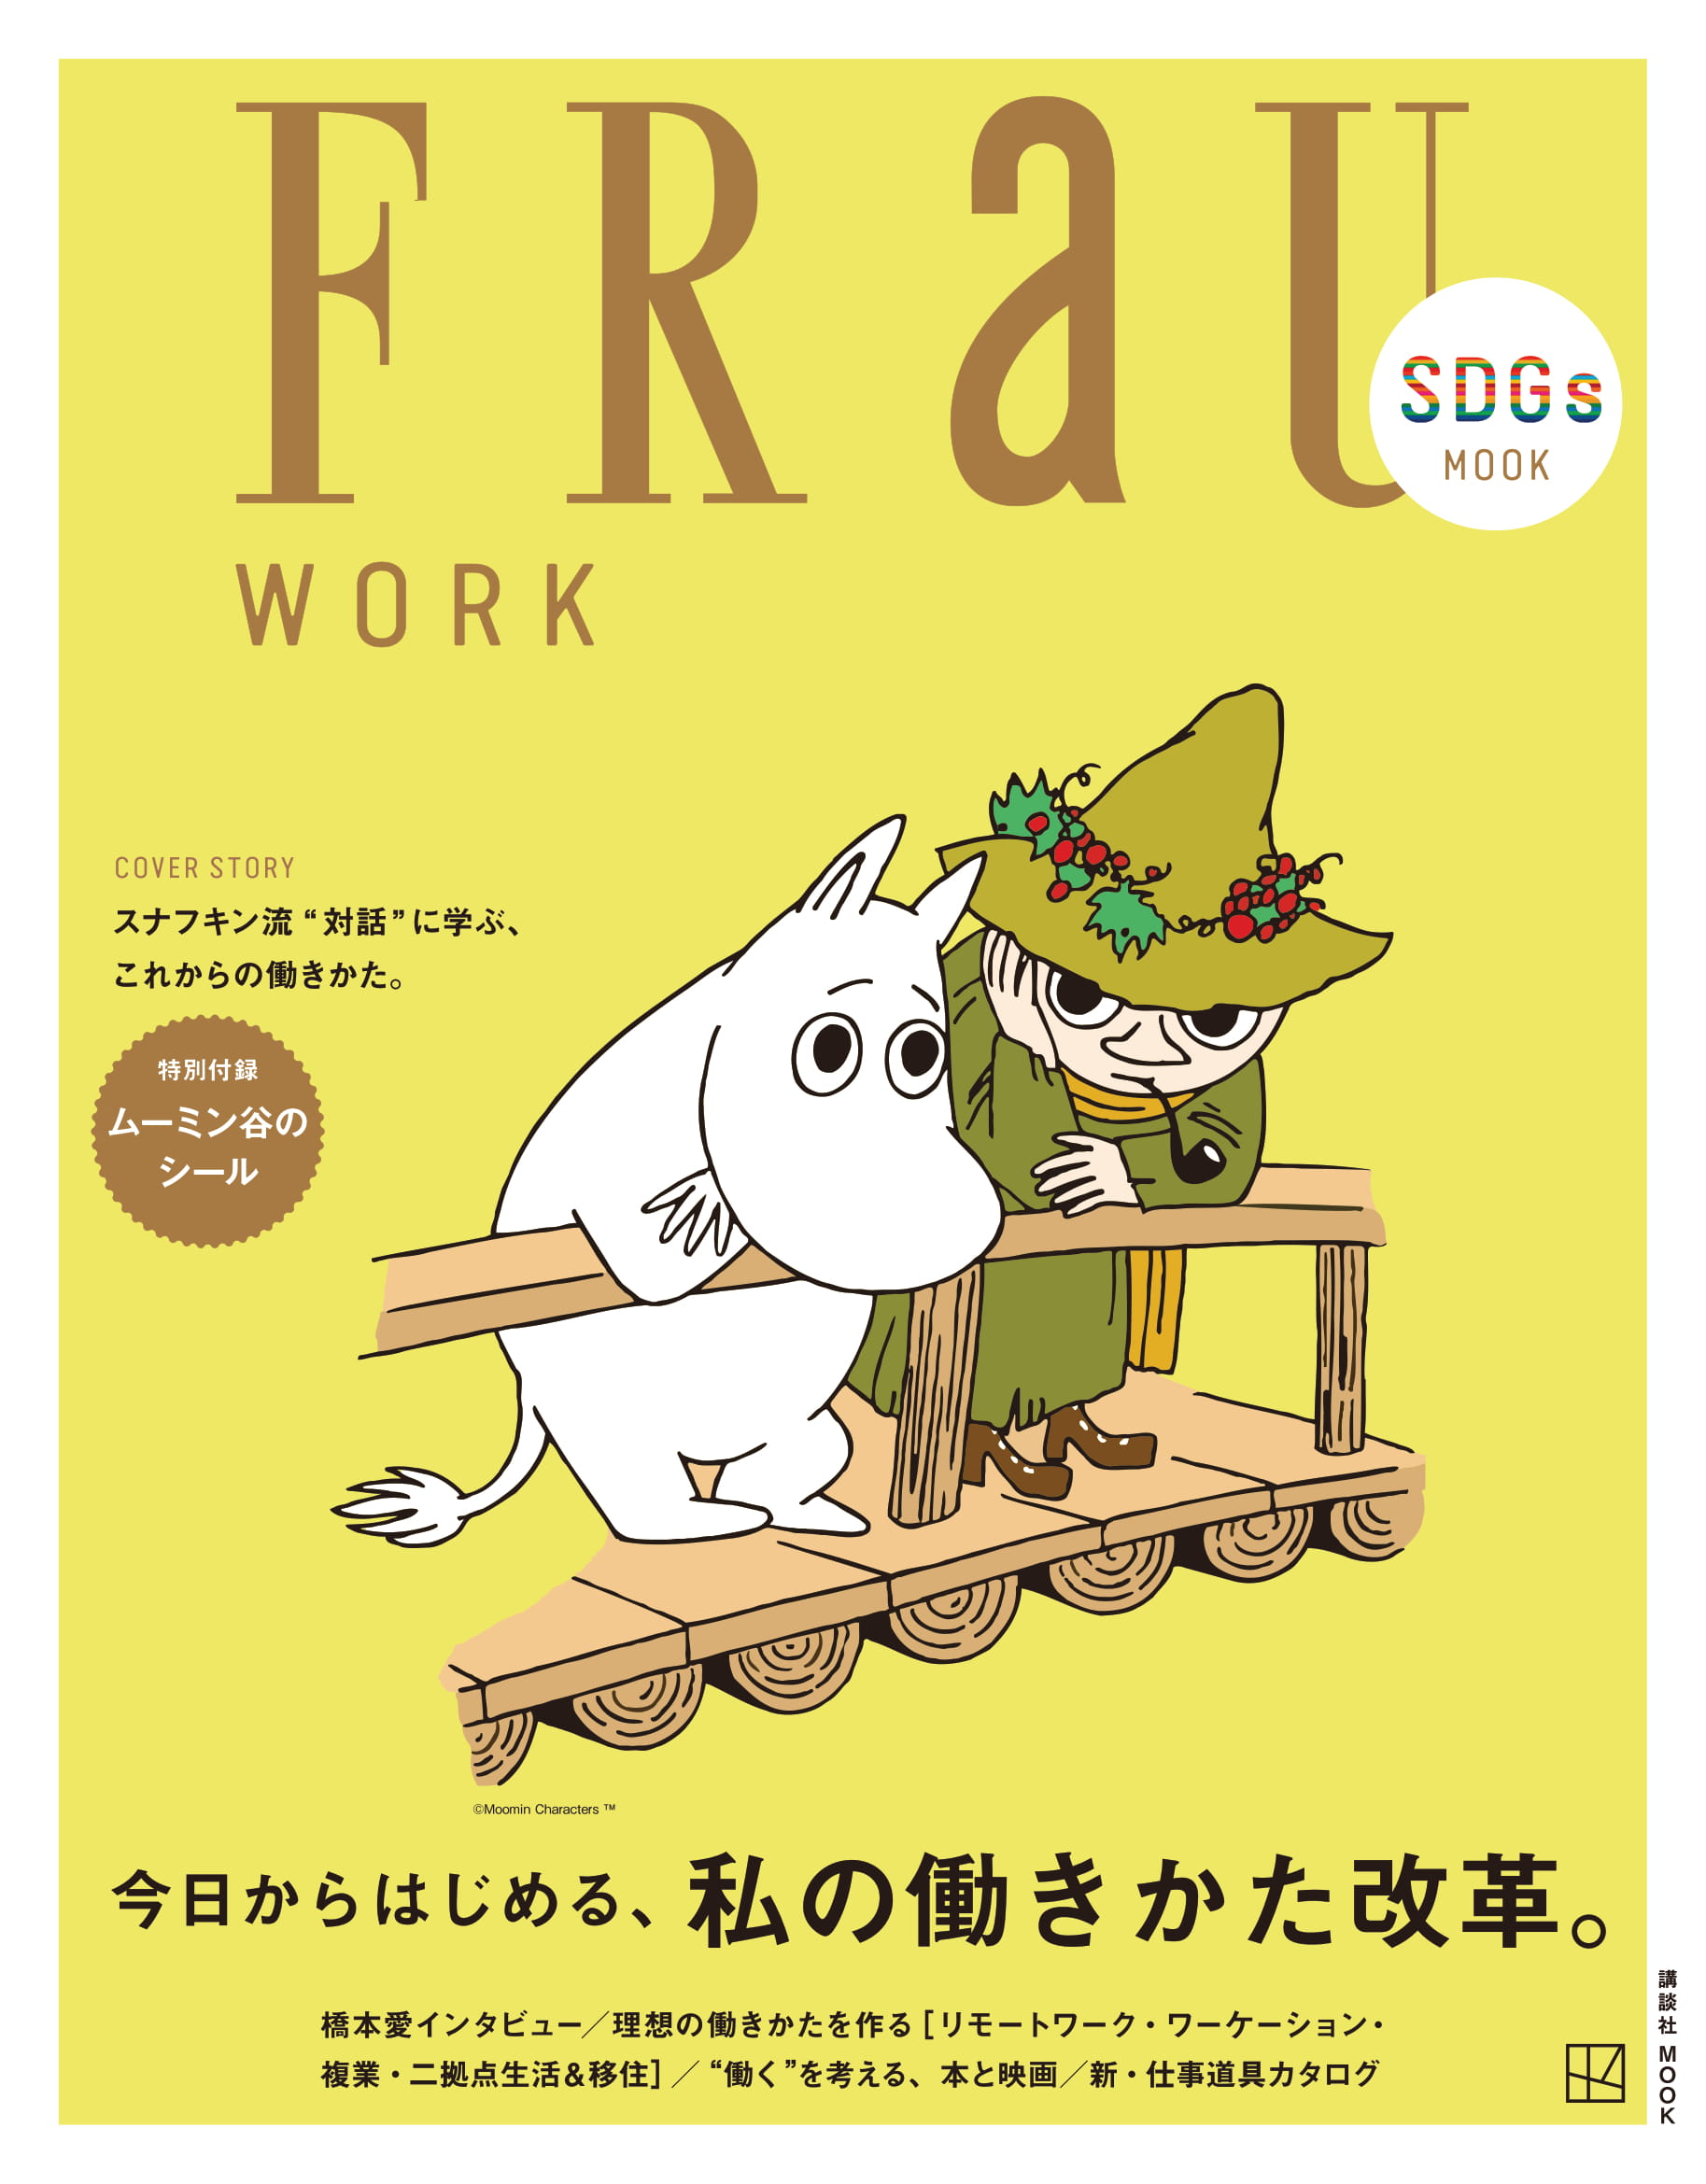 FRaU SDGs MOOK第３弾のテーマは「WORK」！これからの生き方働き方、ヒントはスナフキン